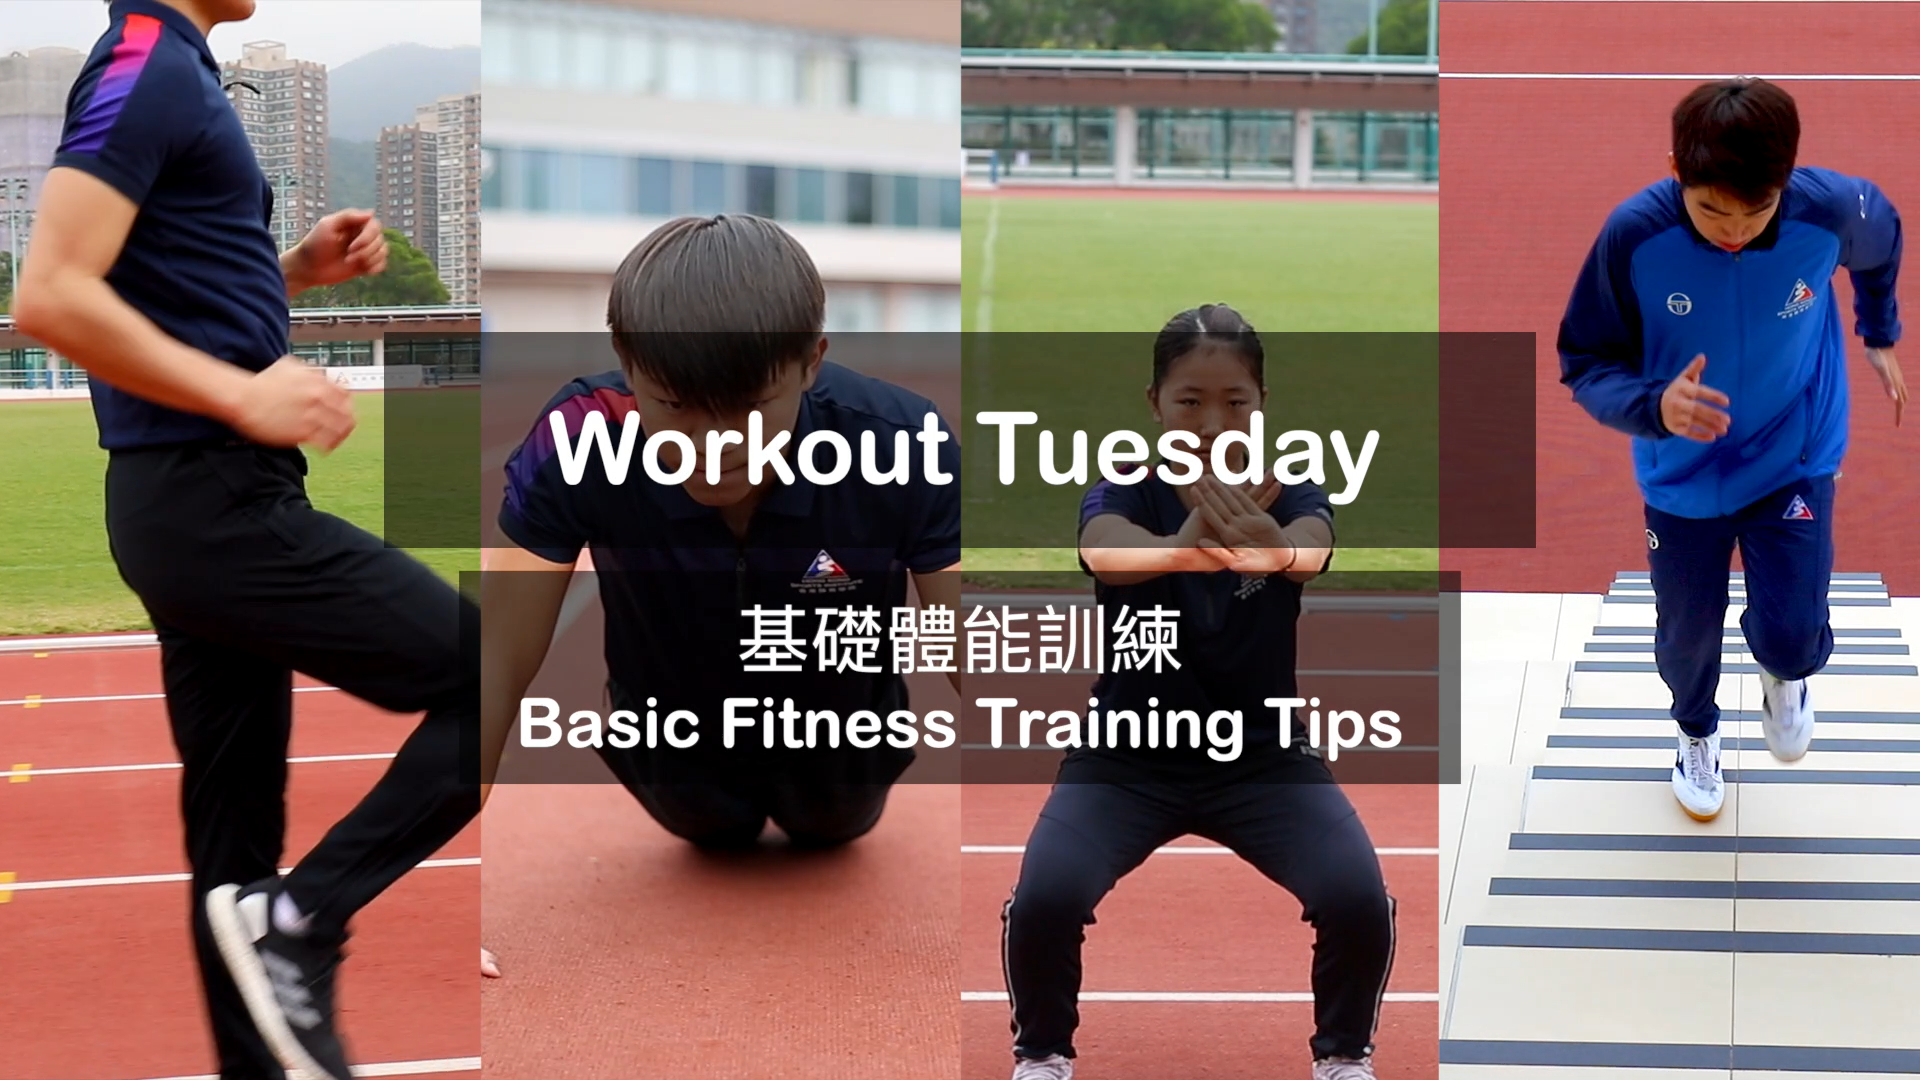 Video: Basic Fitness Training Tips